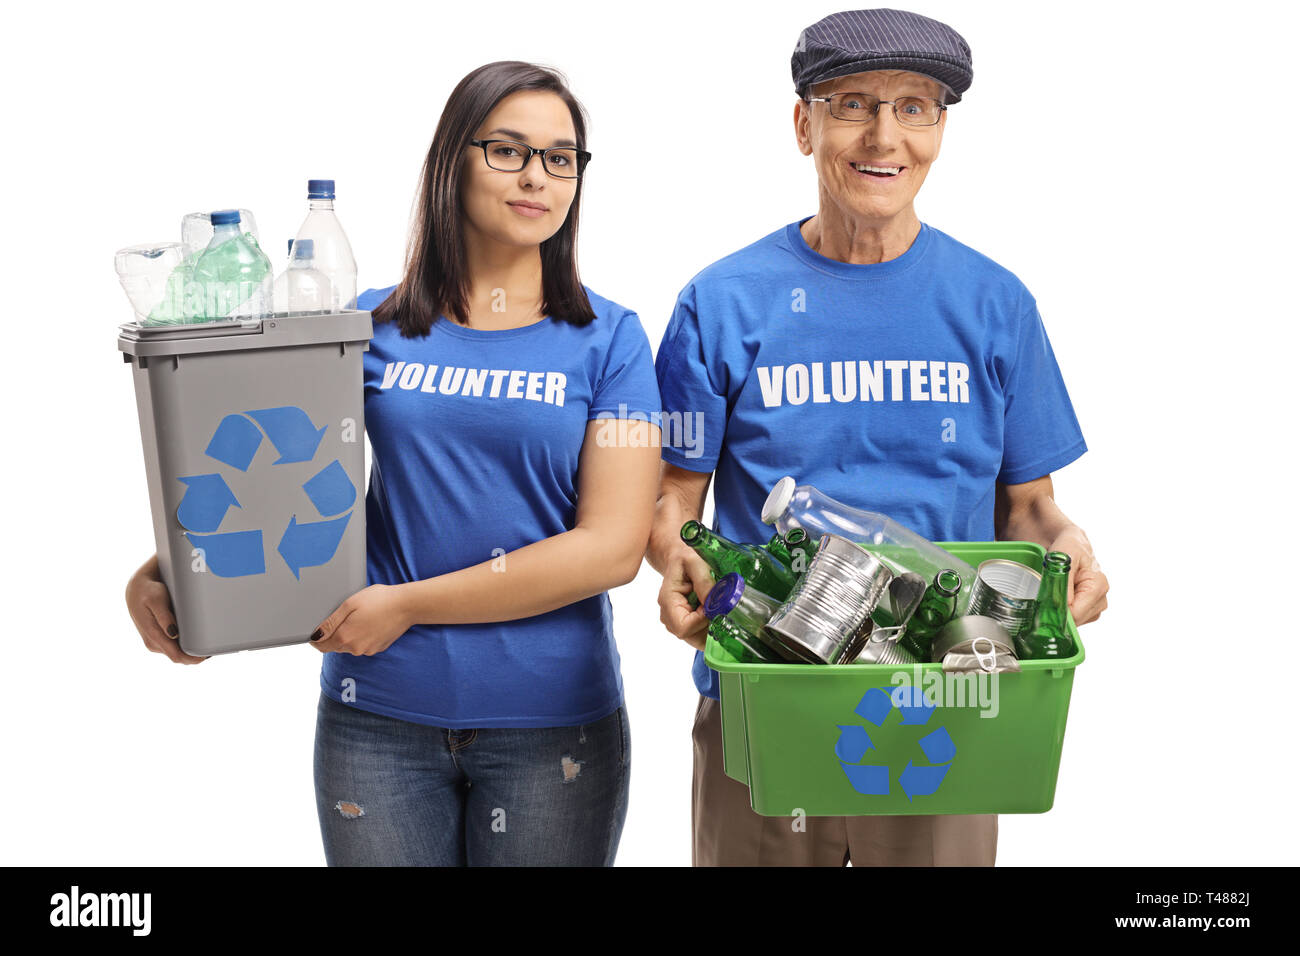 Giovani volontari di sesso femminile e un uomo anziano volontario con cassonetti per il riciclaggio isolati su sfondo bianco Foto Stock